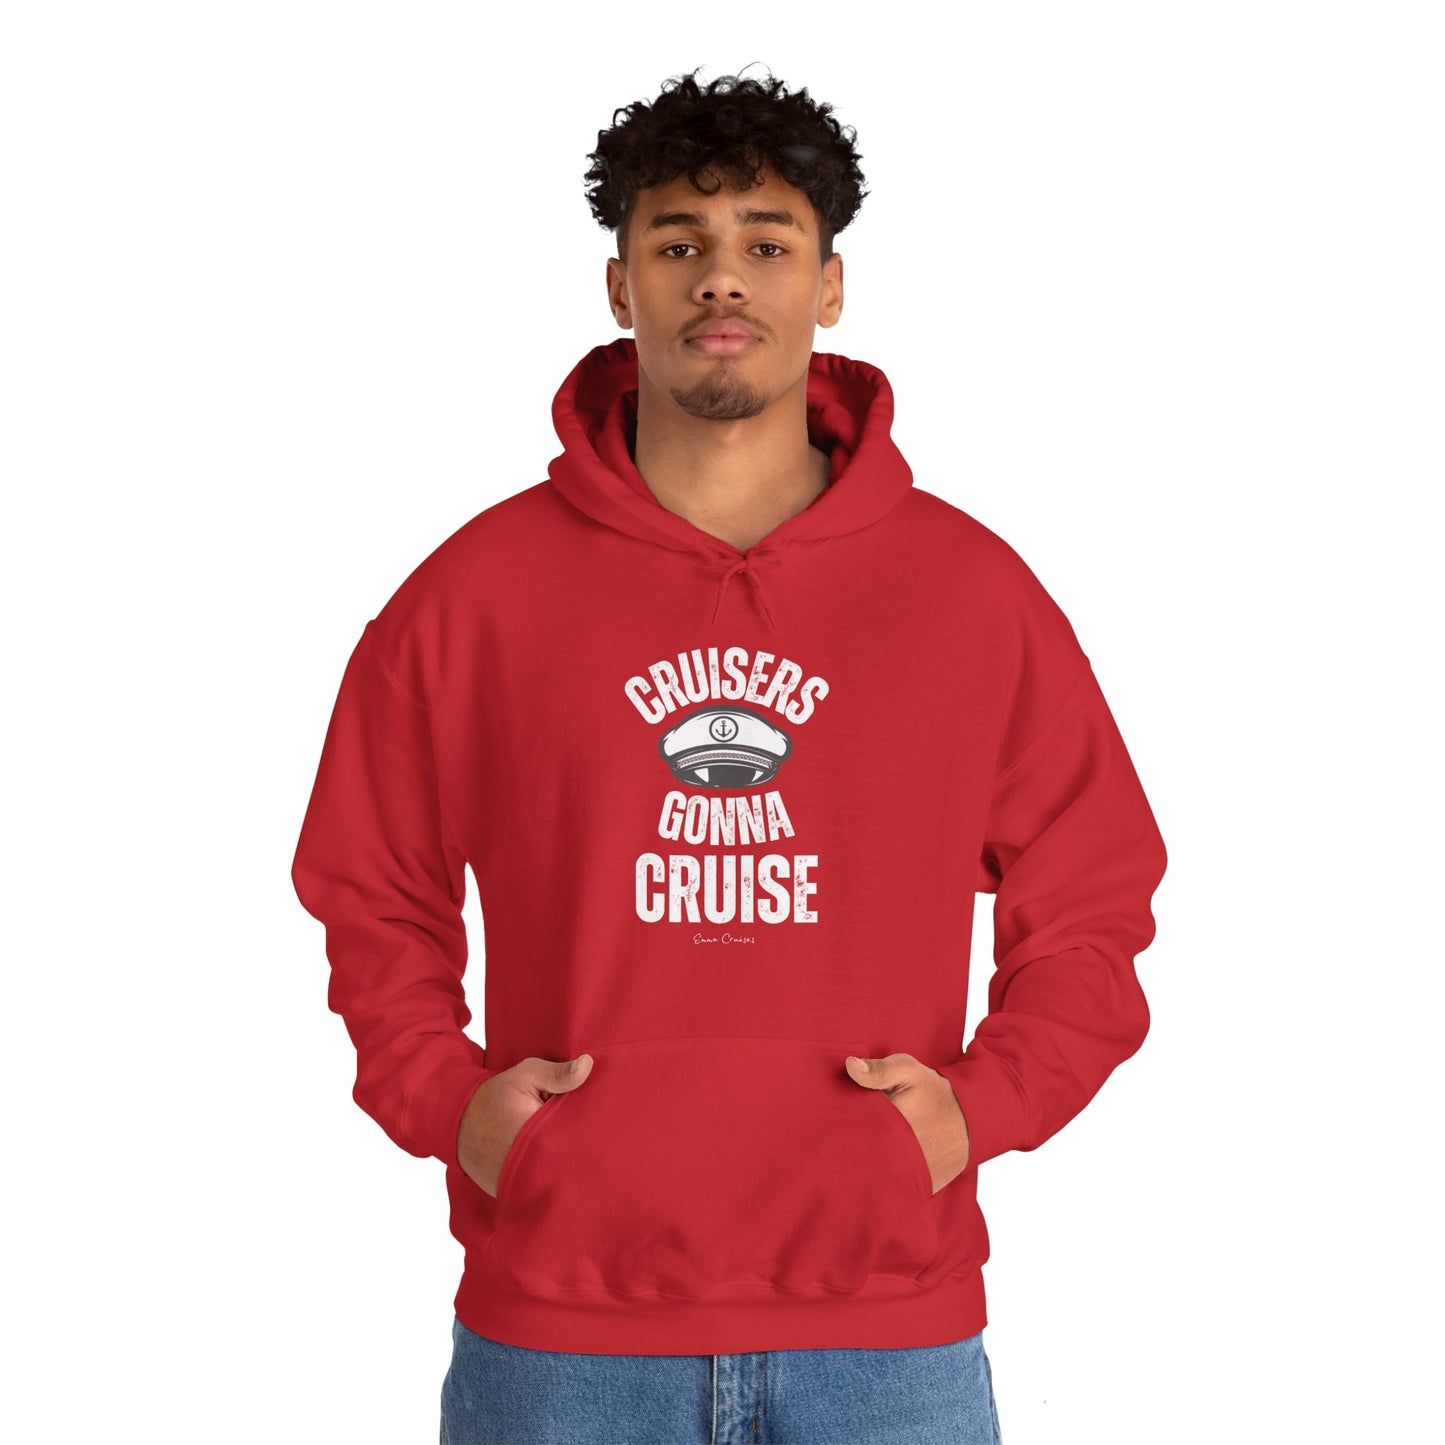 Cruisers Gonna Cruise - UNISEX Hoodie (UK)